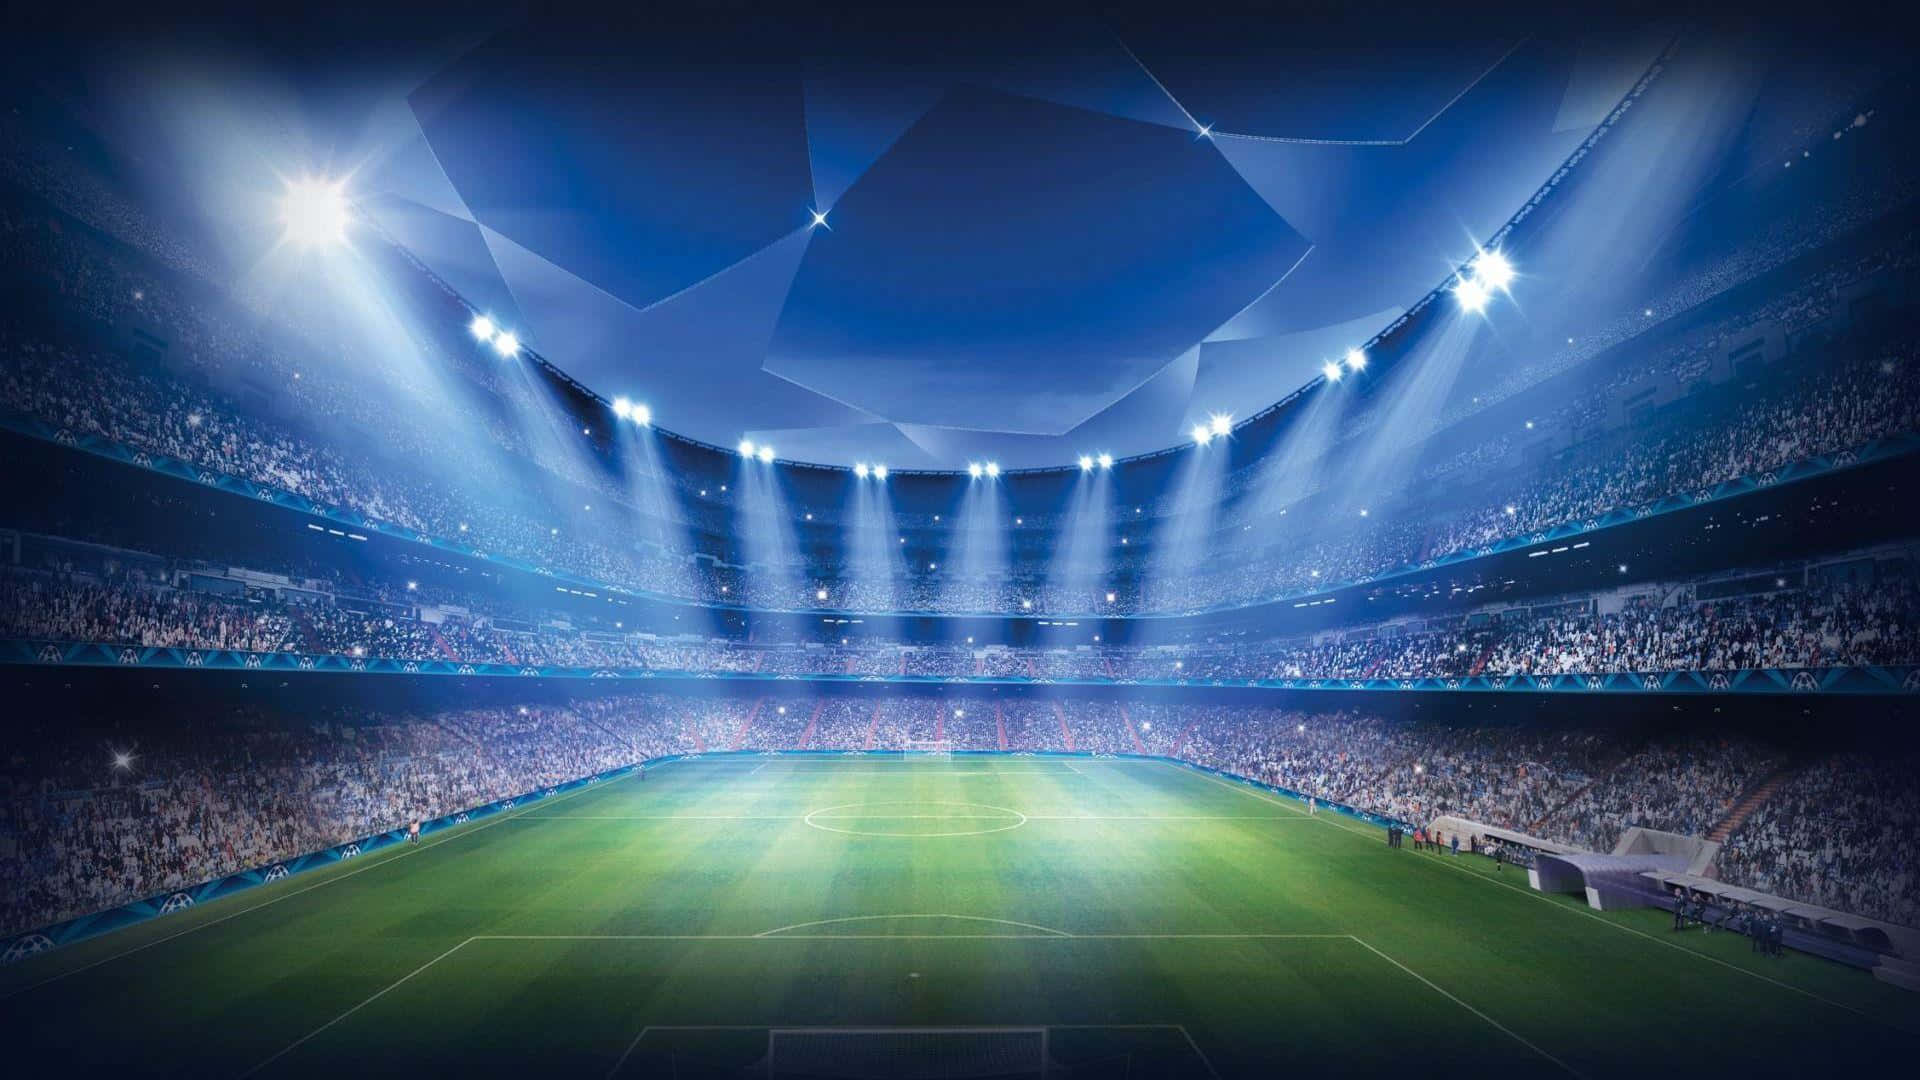 Super Cool UEFA Champions League Digital Art Wallpaper